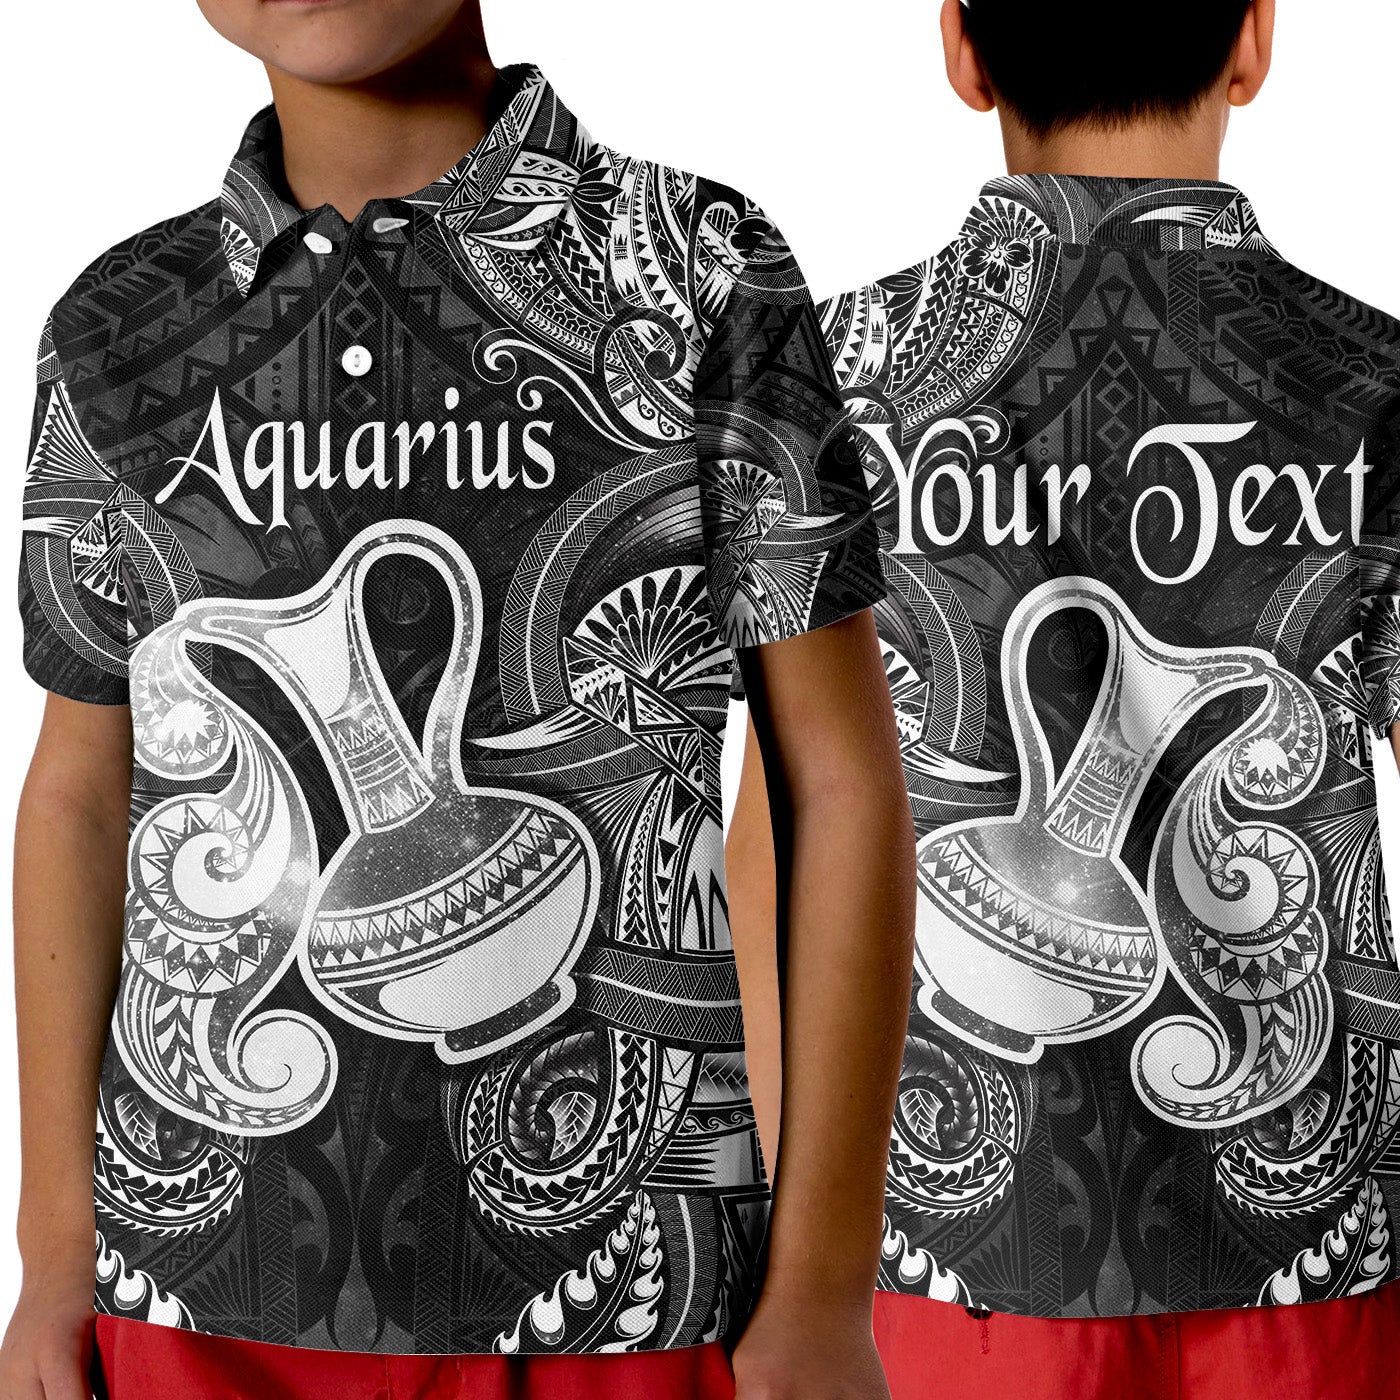 custom-personalised-aquarius-zodiac-polynesian-polo-shirt-kid-unique-style-black